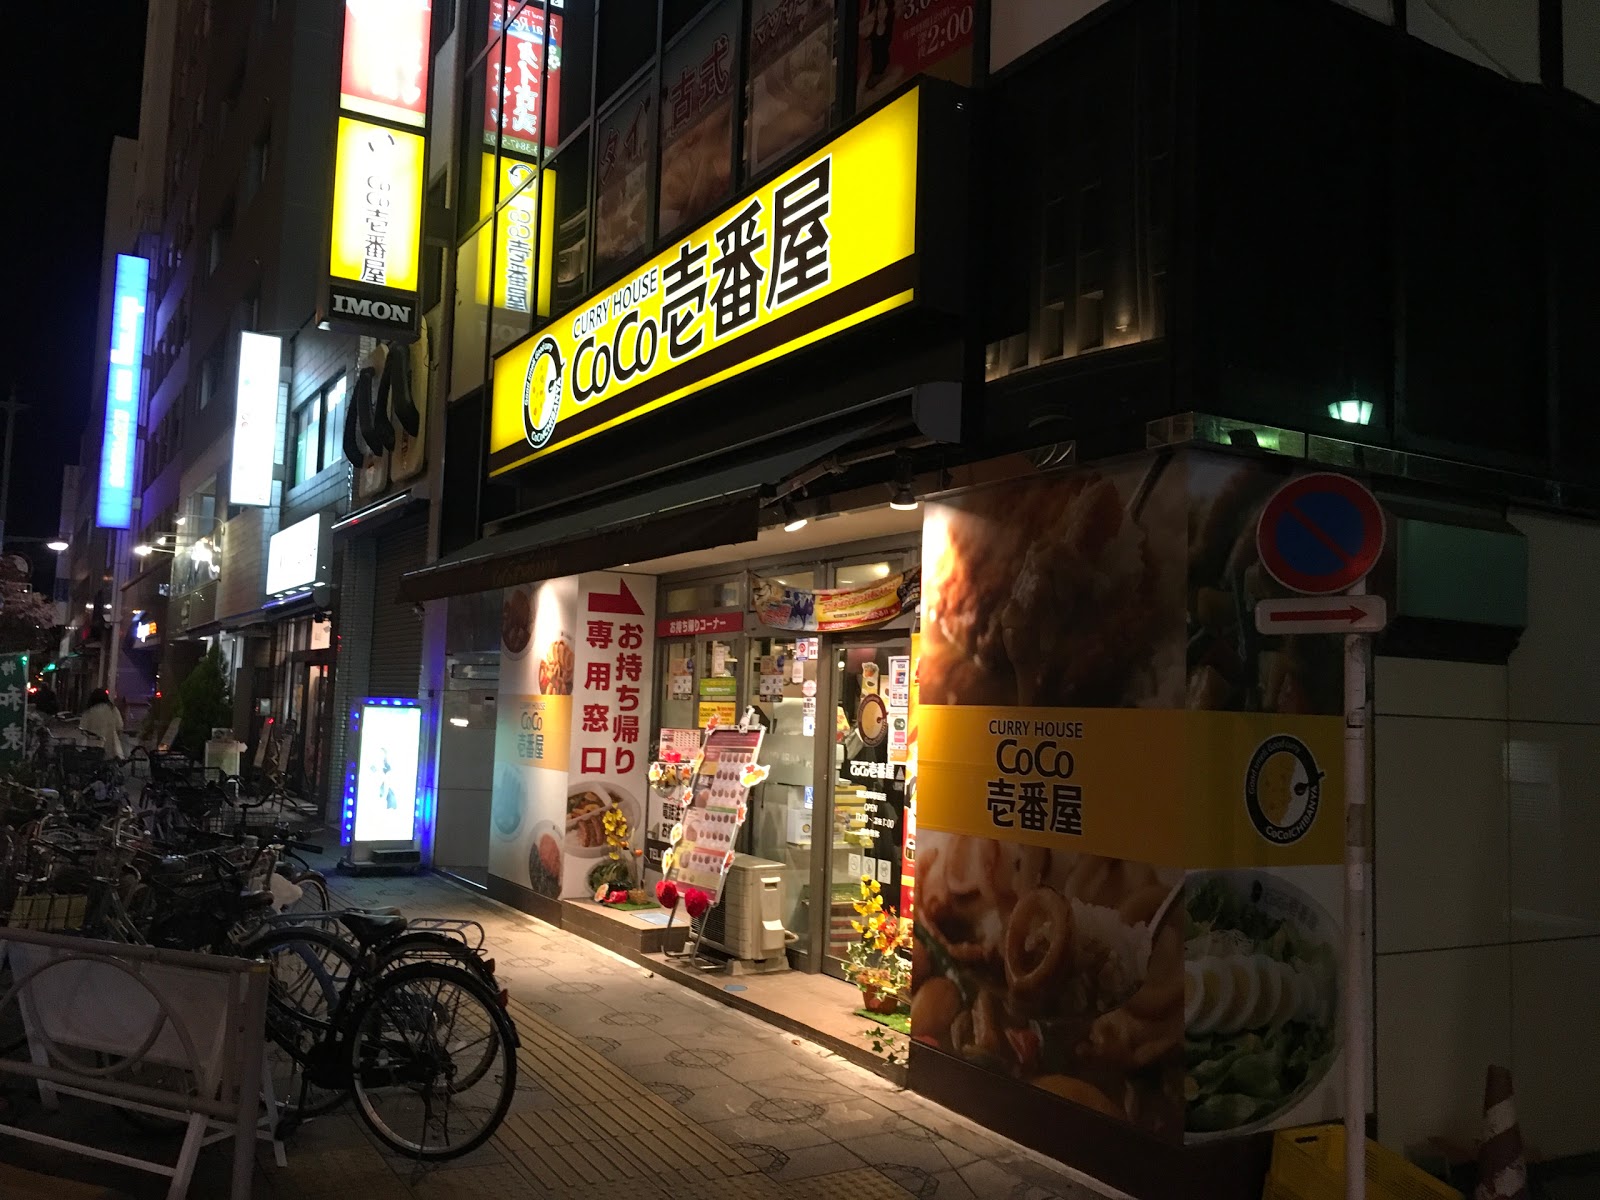 カレーハウス CoCo壱番屋 東武浅草駅前店のイメージ